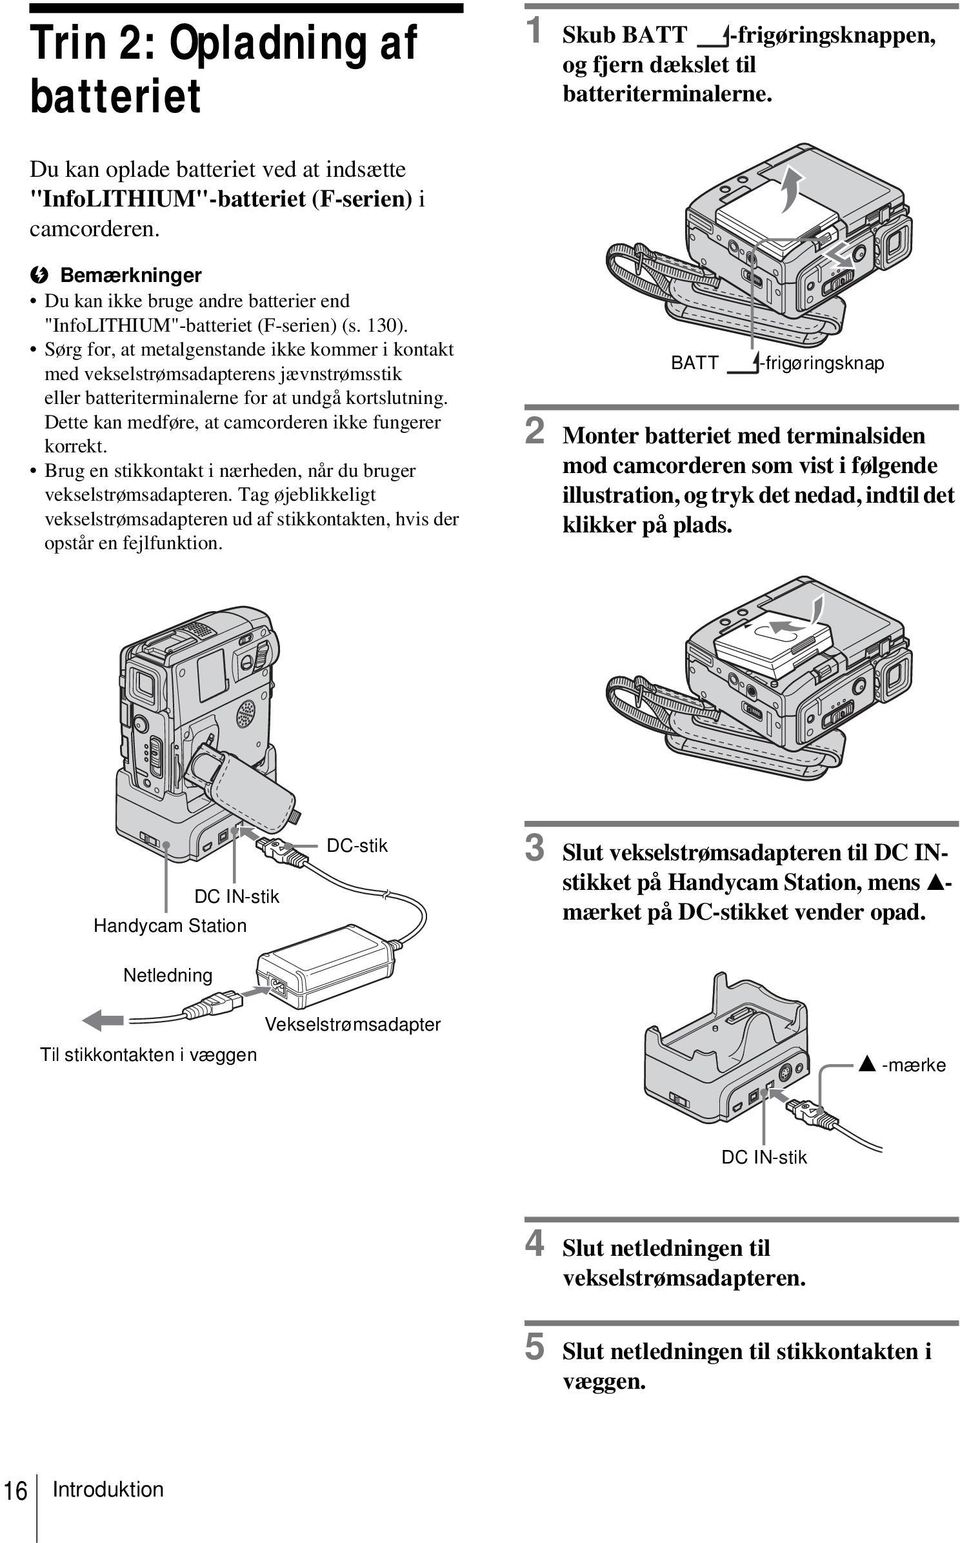 Sørg for, at metalgenstande ikke kommer i kontakt med vekselstrømsadapterens jævnstrømsstik eller batteriterminalerne for at undgå kortslutning.